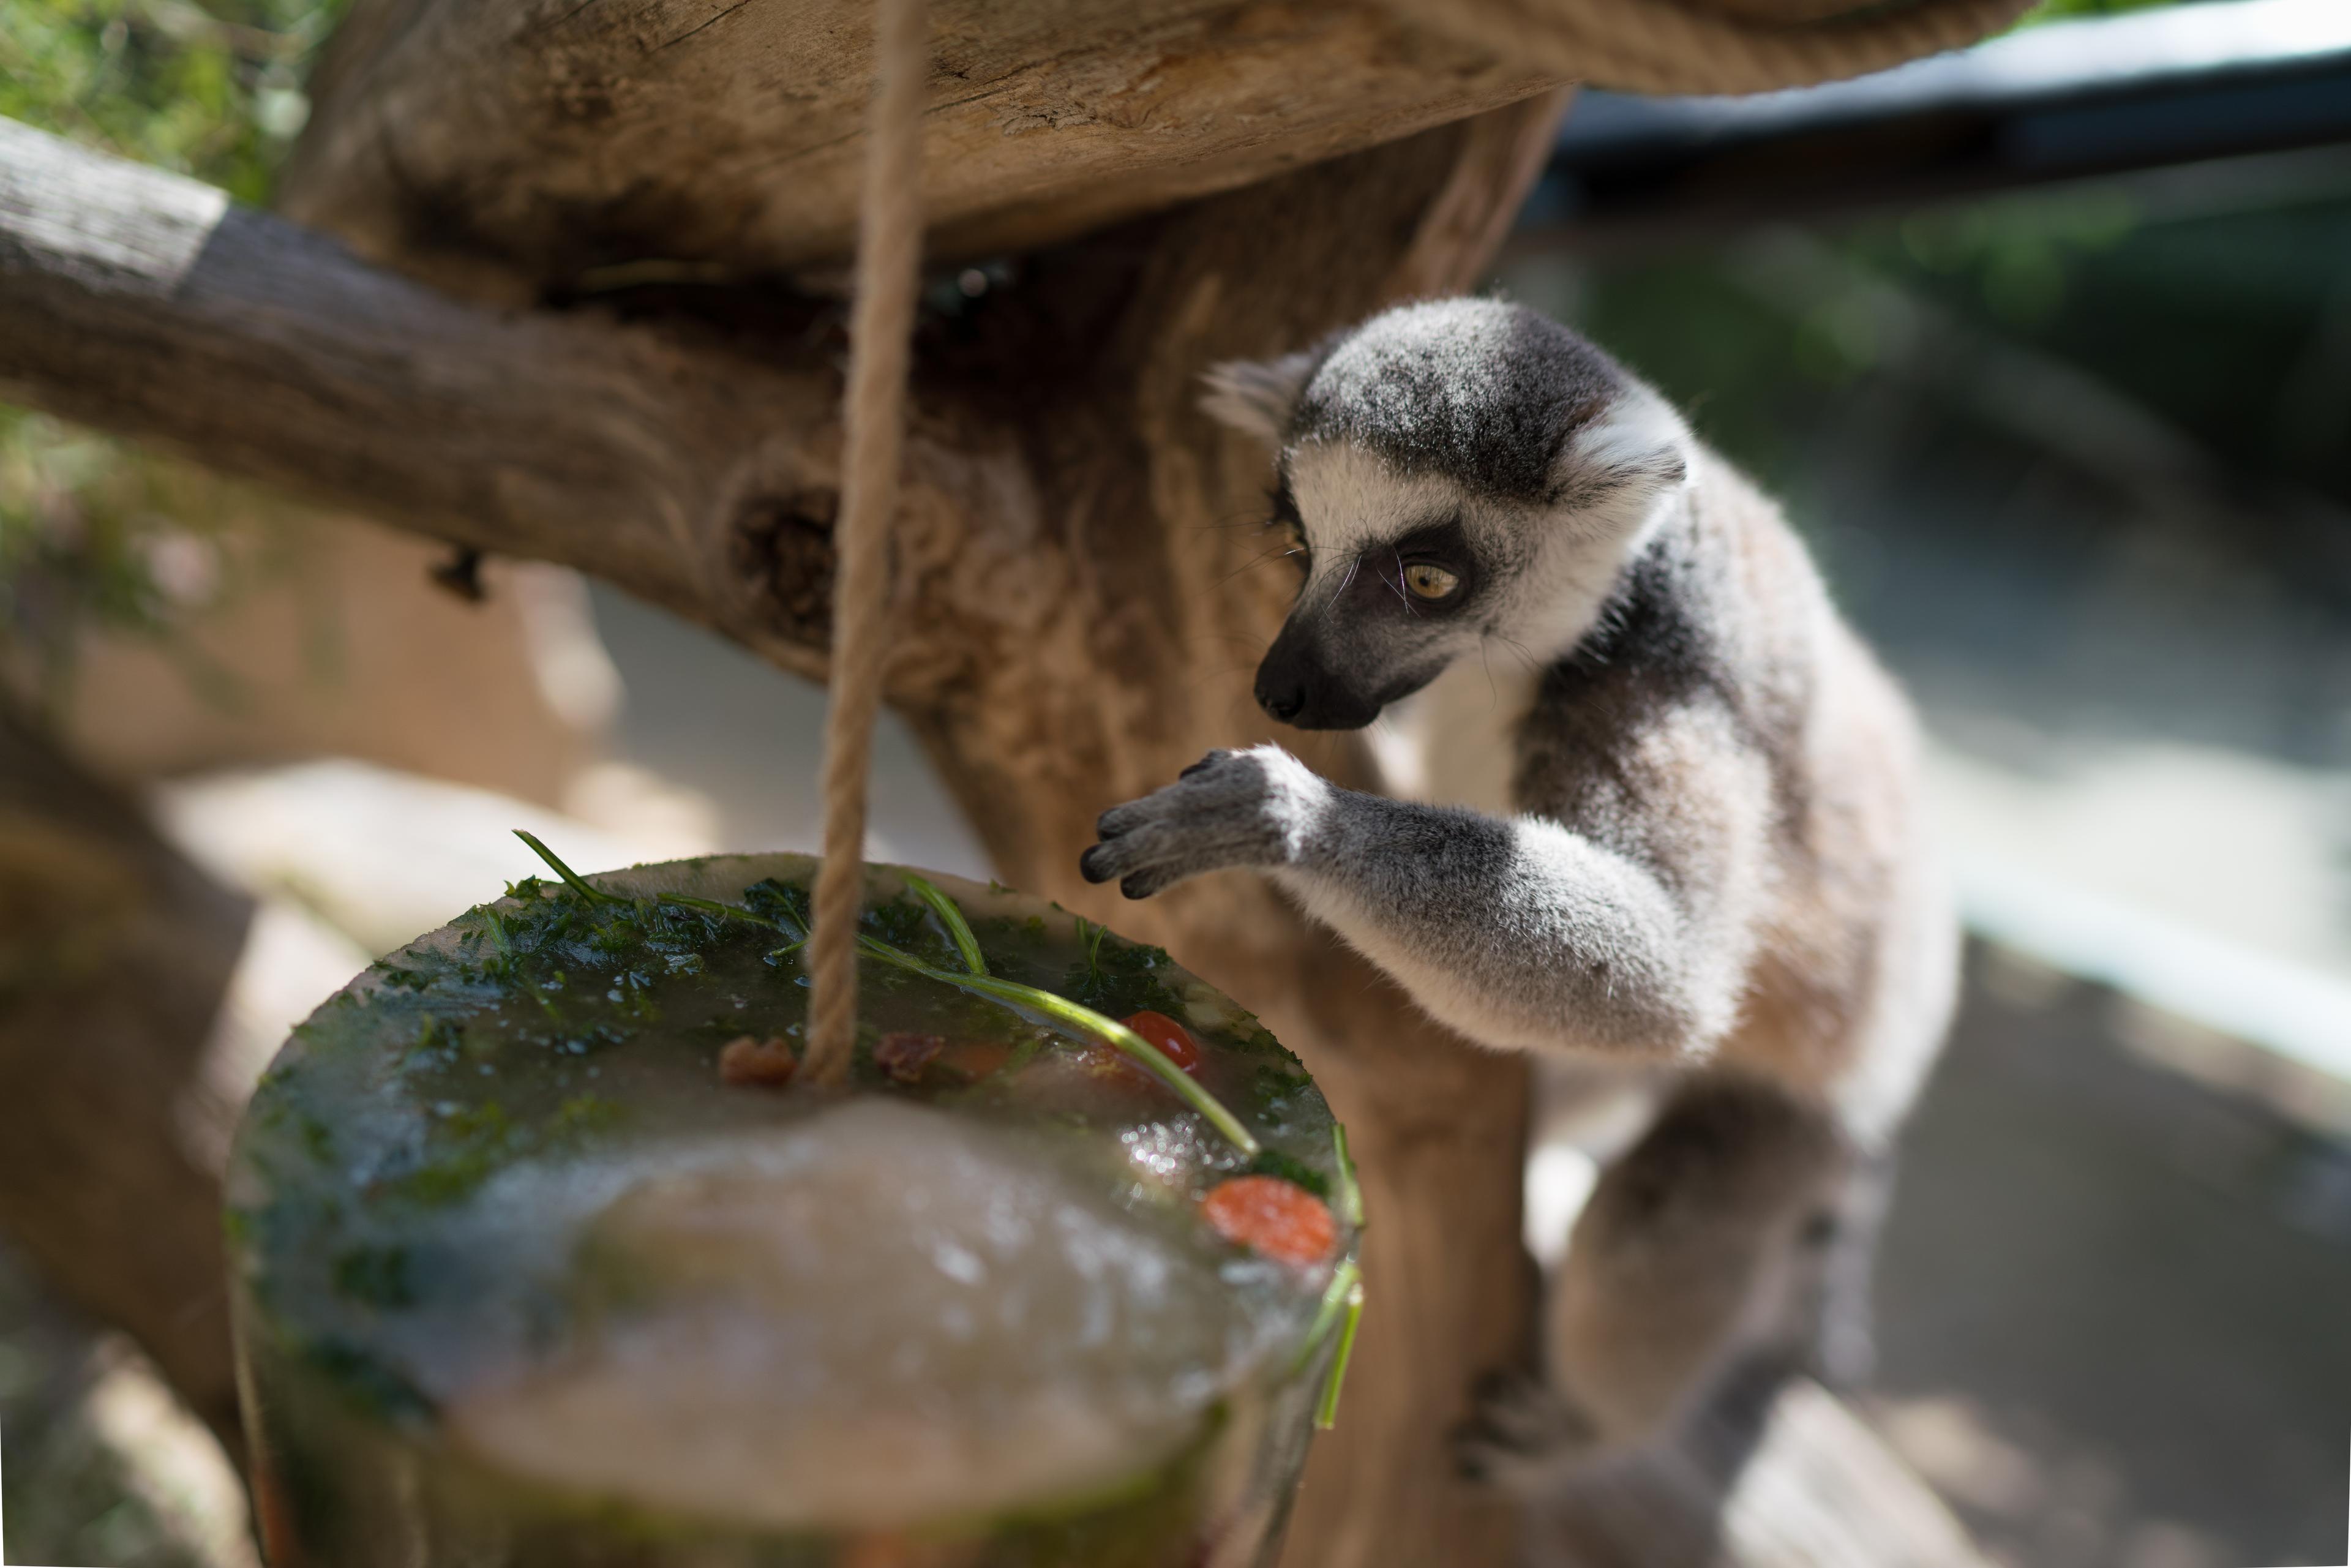 Katta probiert sich an der erfrischenden Eisbombe im Sommer im Zoo Hannover